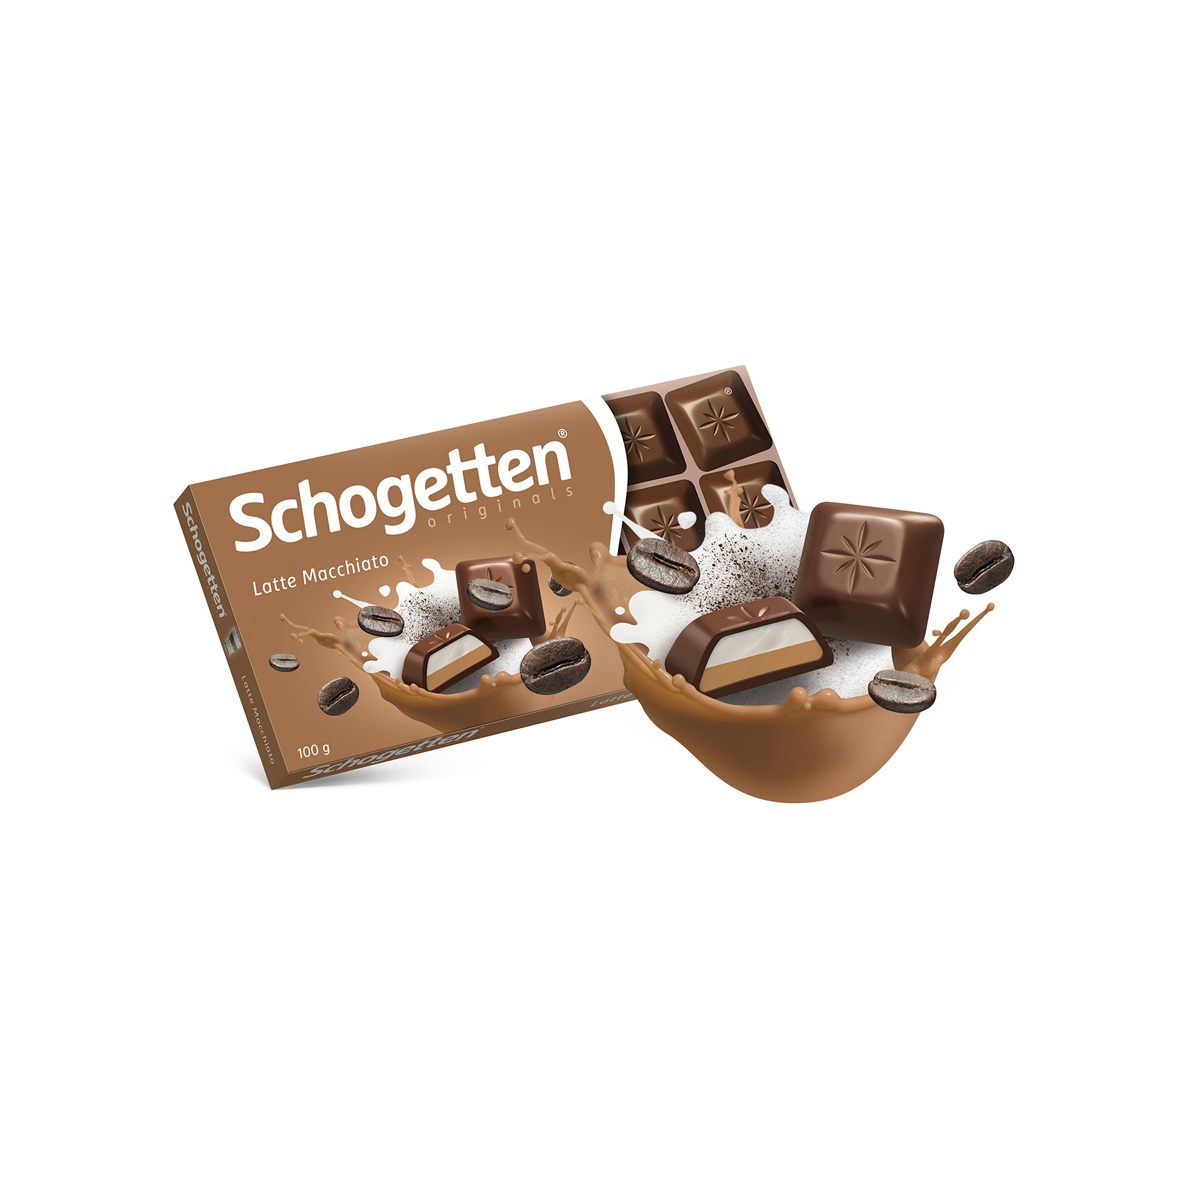 Trumpf Schogetten Latte Macchiato | Boutique en ligne plentyShop LTS